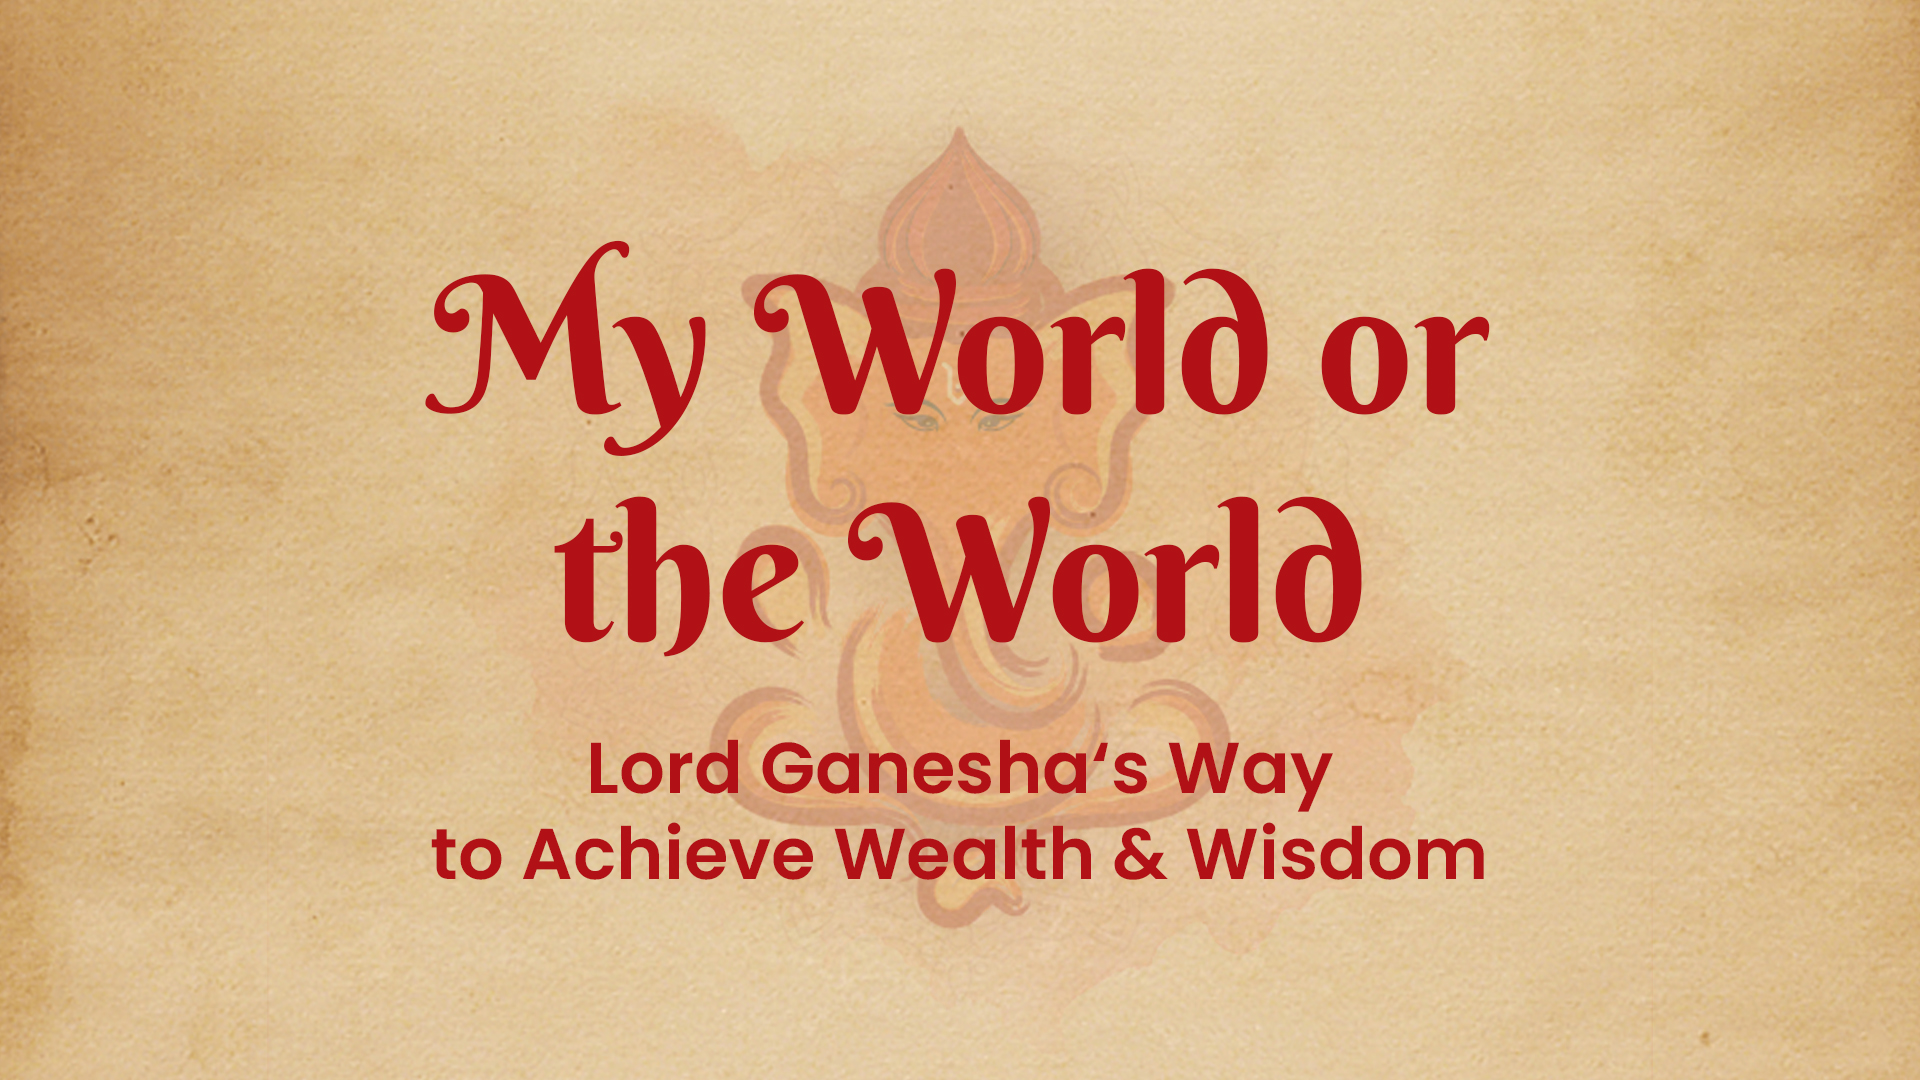 Lord Ganesha wisdom